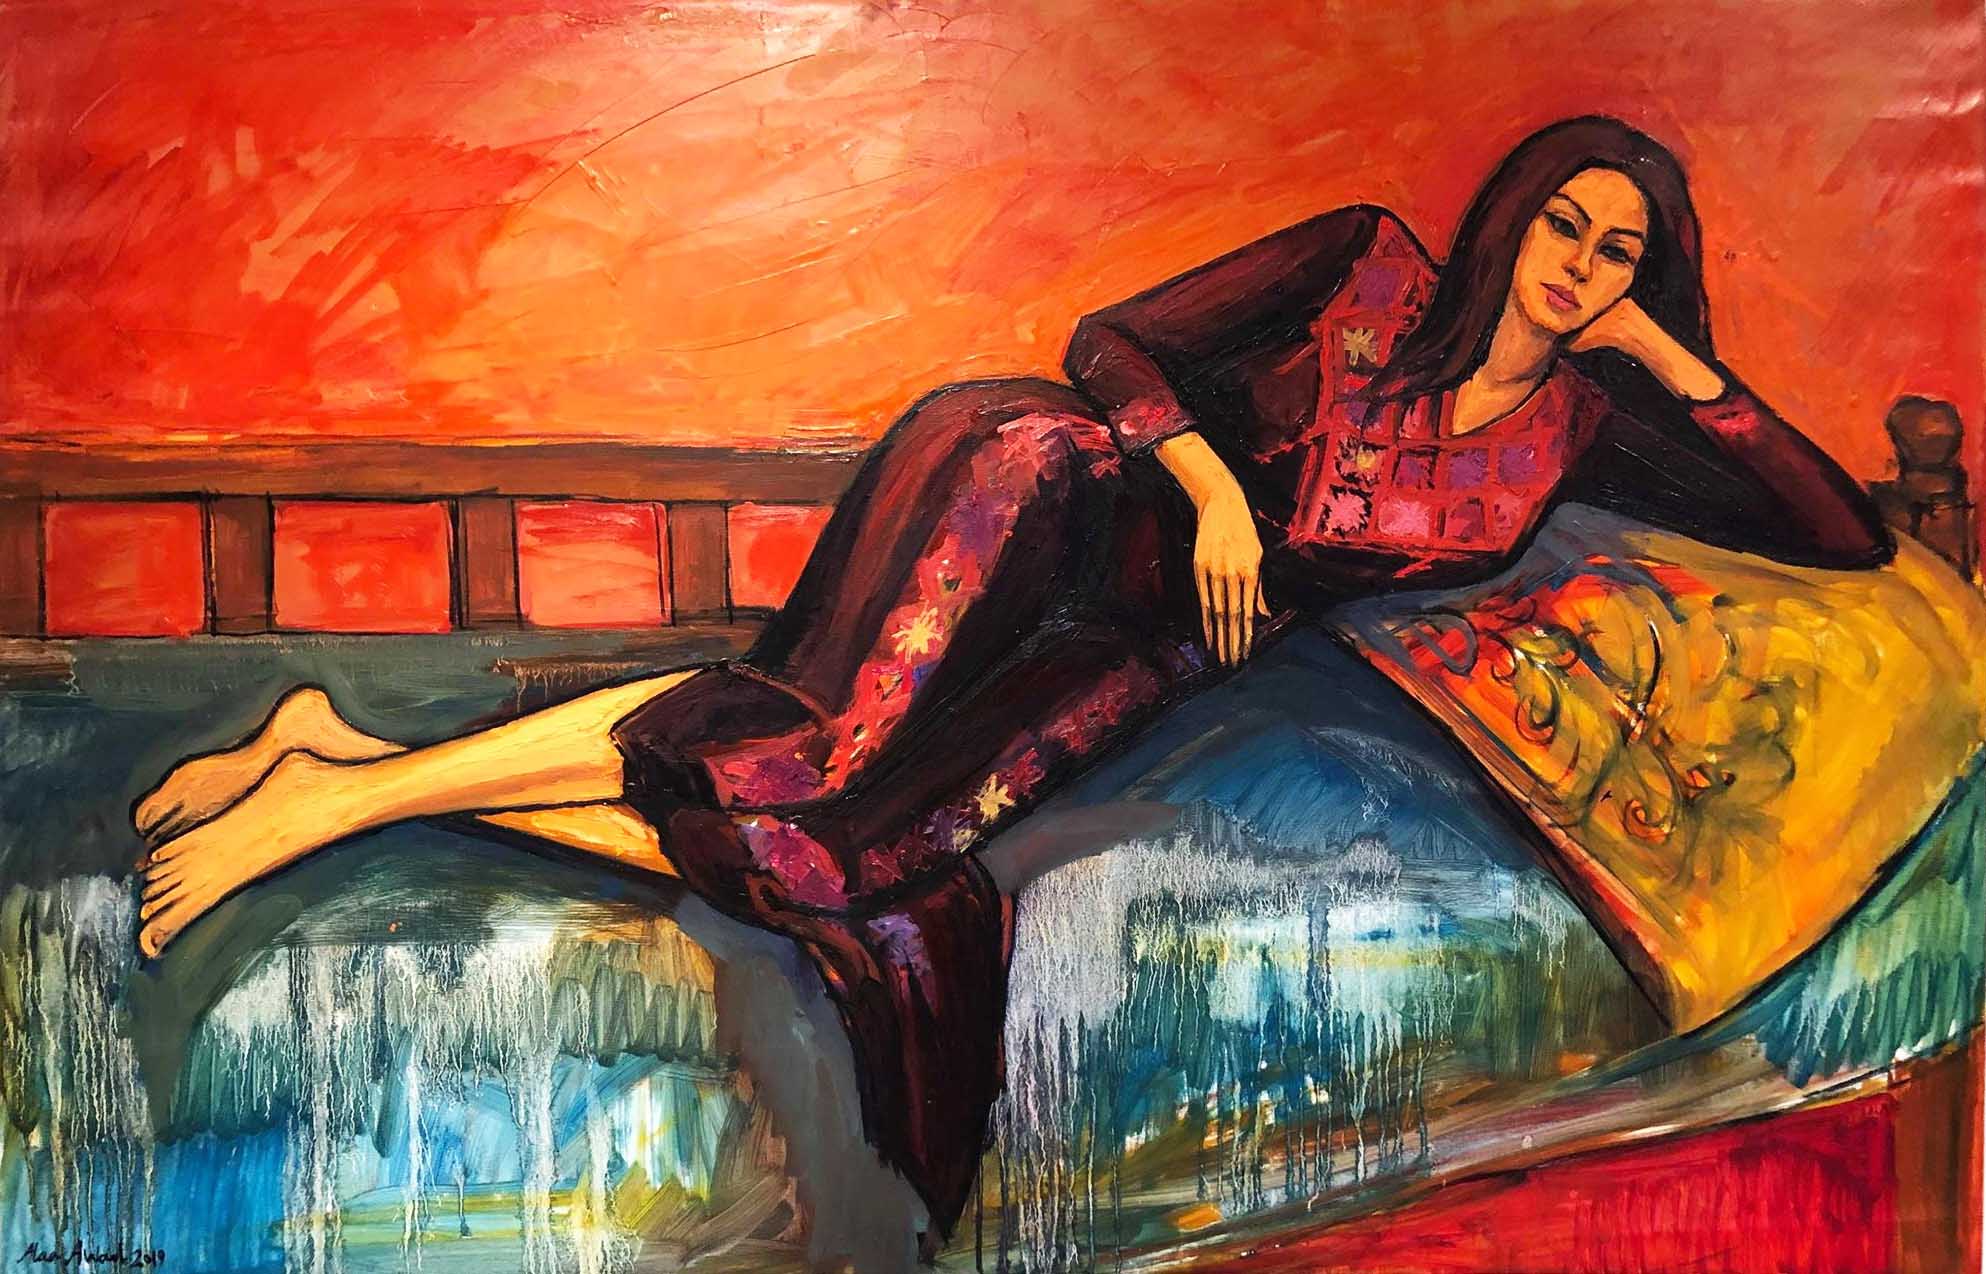 Manar 50 × 80 cm, oil on canvas 2019